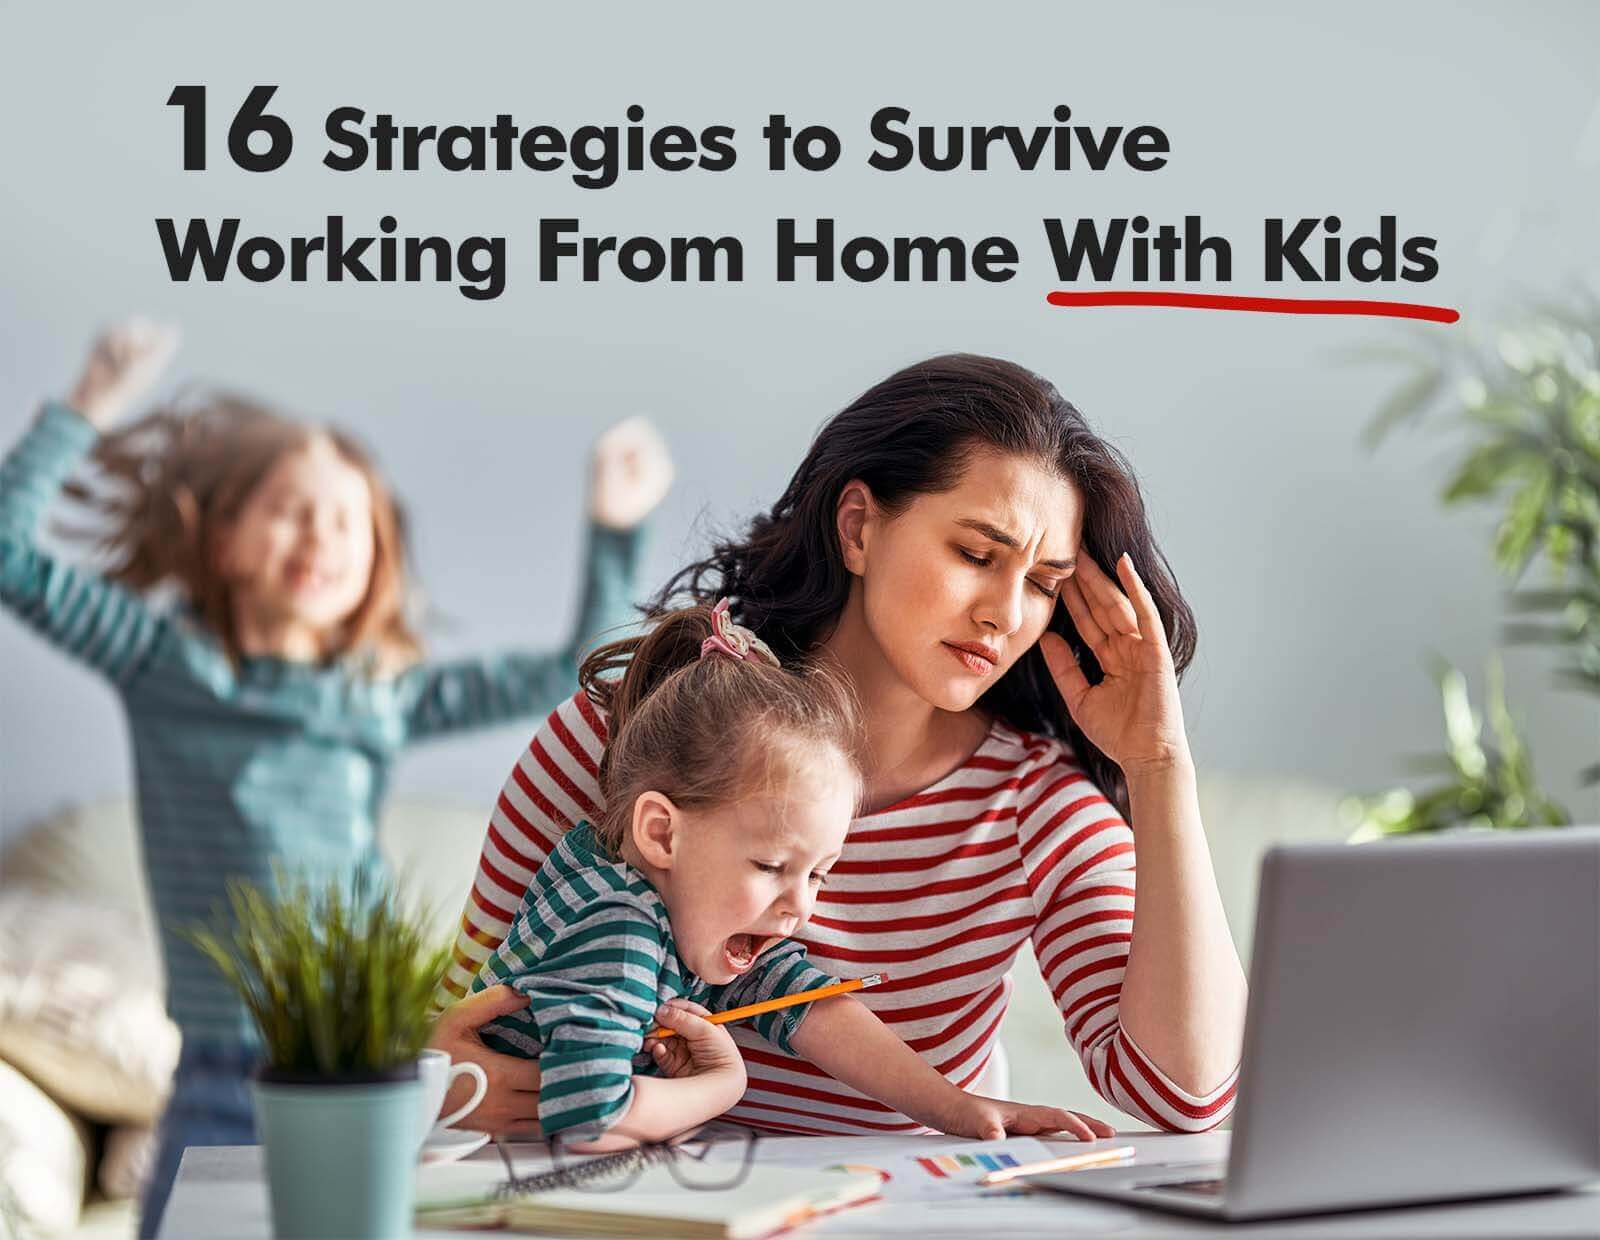 https://compareinternet.com/blog/16-estrategias-para-sobrevivir-trabajando-en-casa-con-niños/